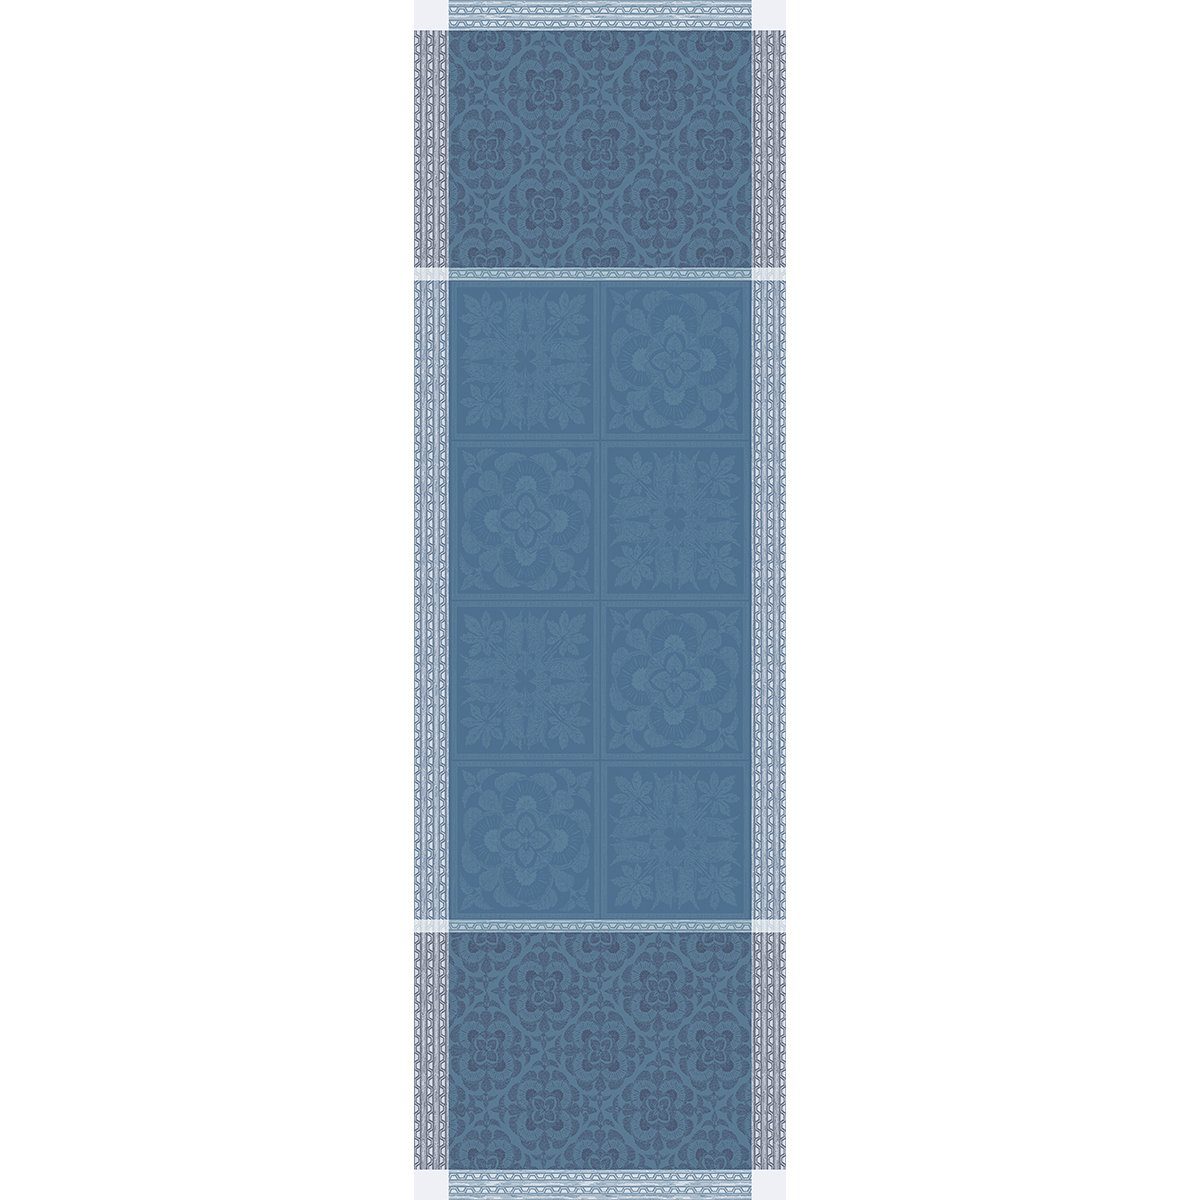 Garnier Thiebaut Tischläufer Tischläufer Harmonie cm, Bleu 54x174 jacquard-gewebt